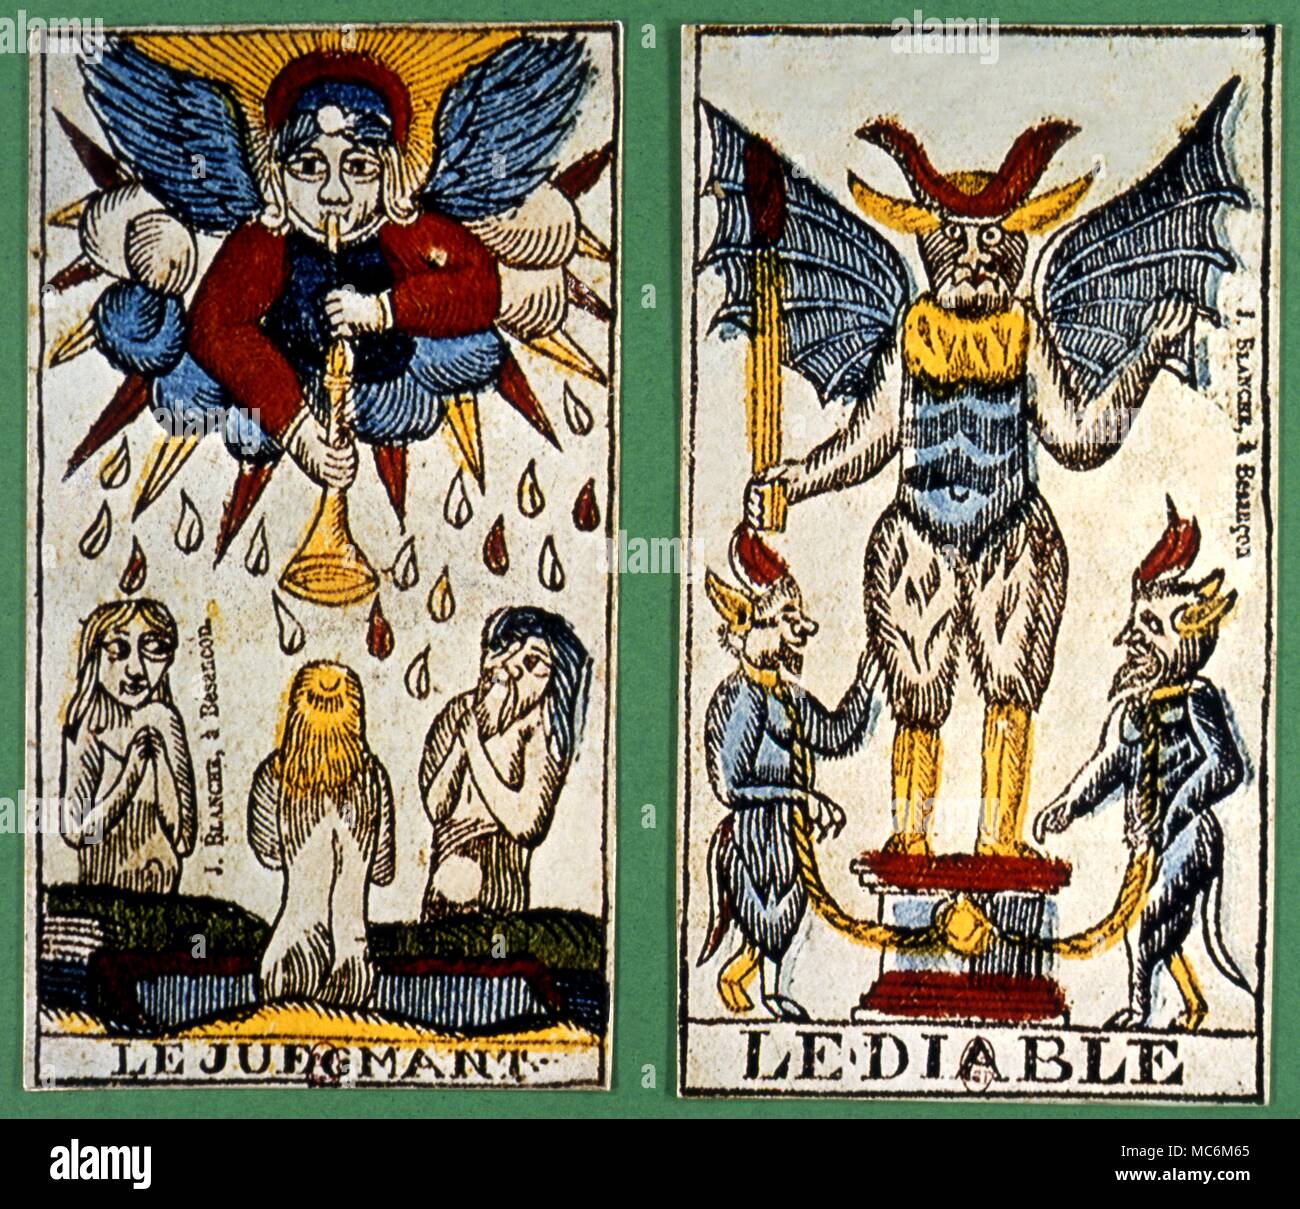 Cartes de Tarot - deux Arcanes majeurs au début du xviie siècle français atout le diable et le jugement à partir de la carte d'une plate-forme de tarot Banque D'Images